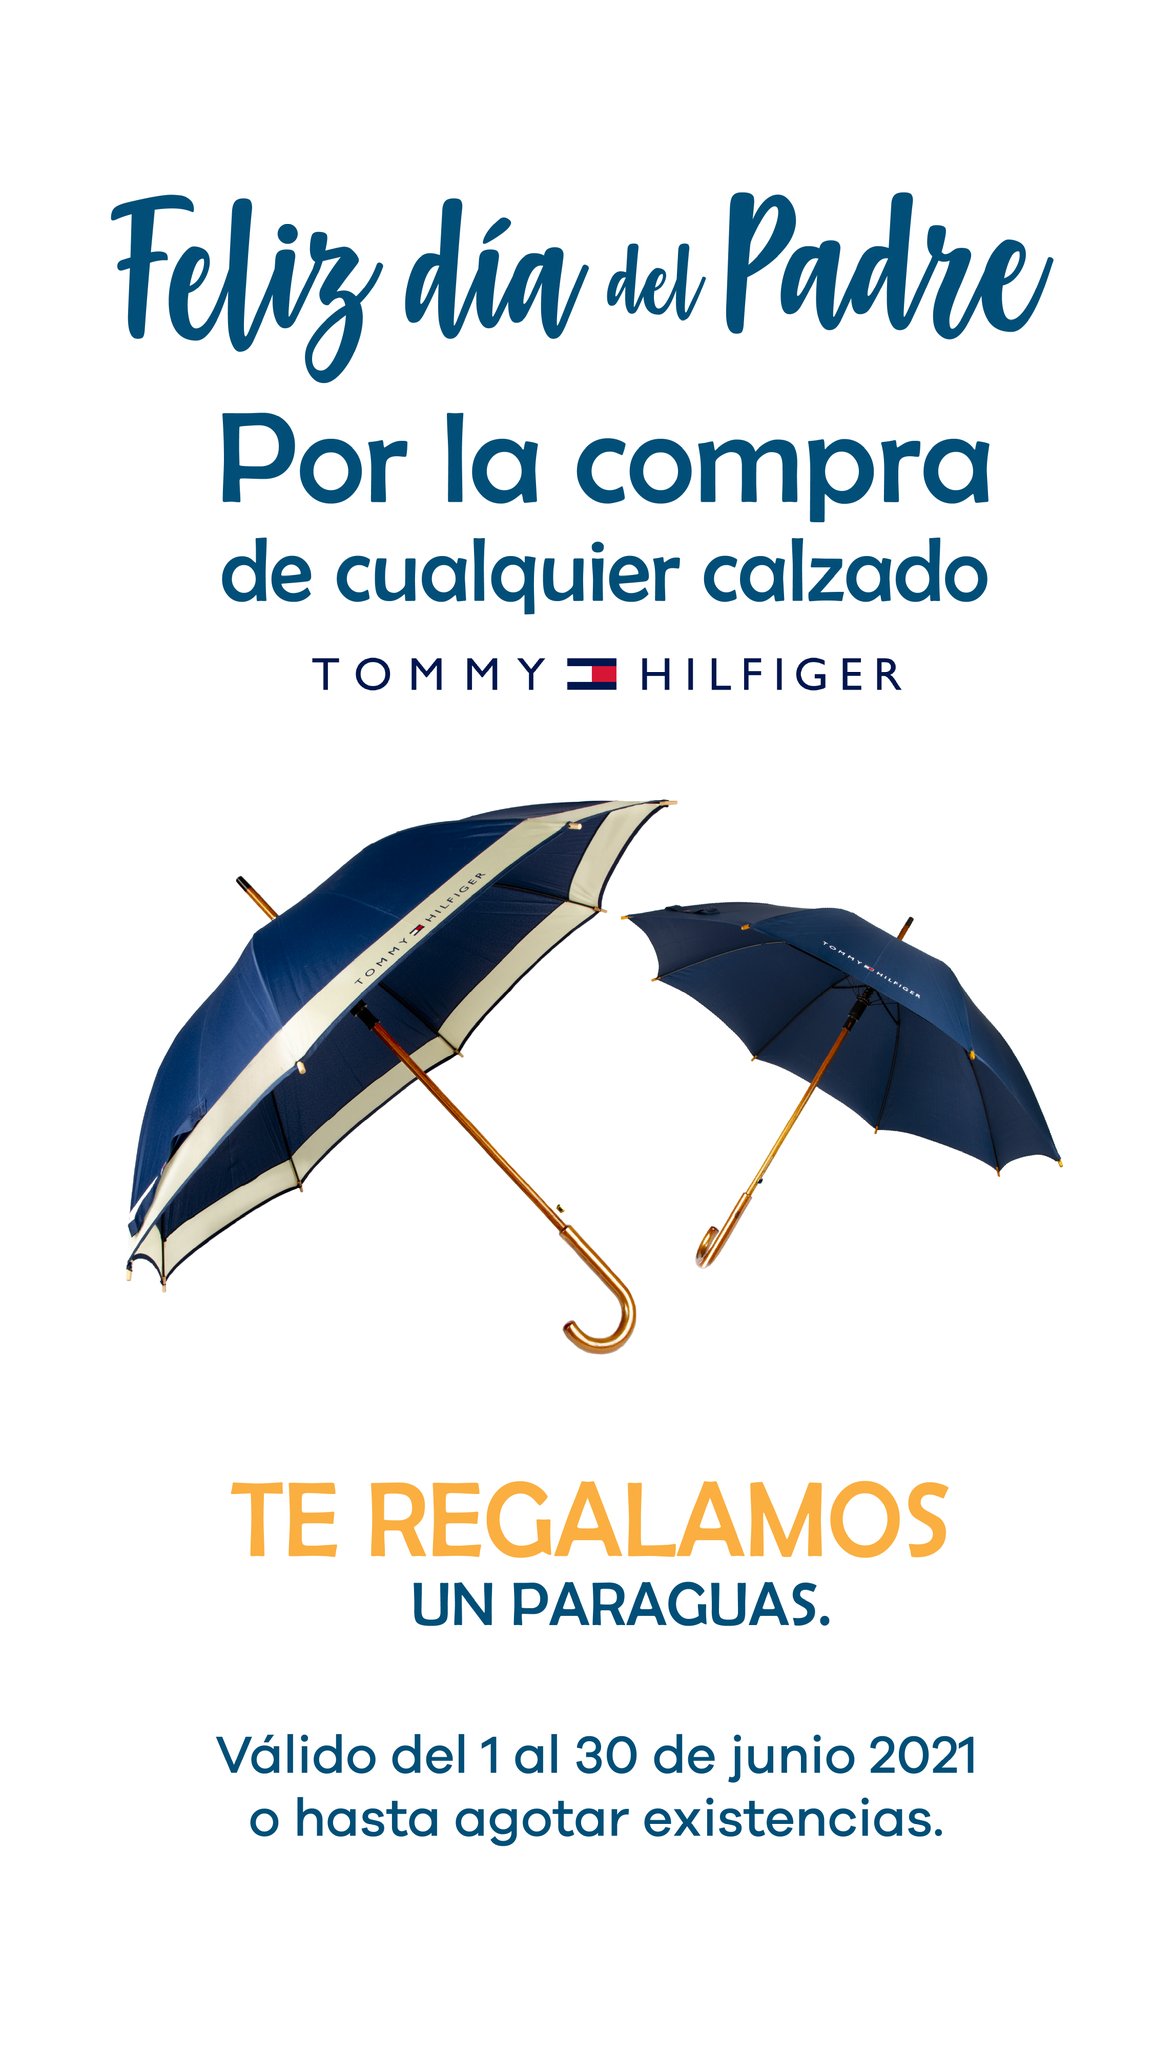 bbb Shoes & Boots on Twitter: "Por la compra de cualquier la marca Tommy Hilfiger te llevas 1 paraguas (diseño varia según disponibilidad). del 1 al 30 de junio